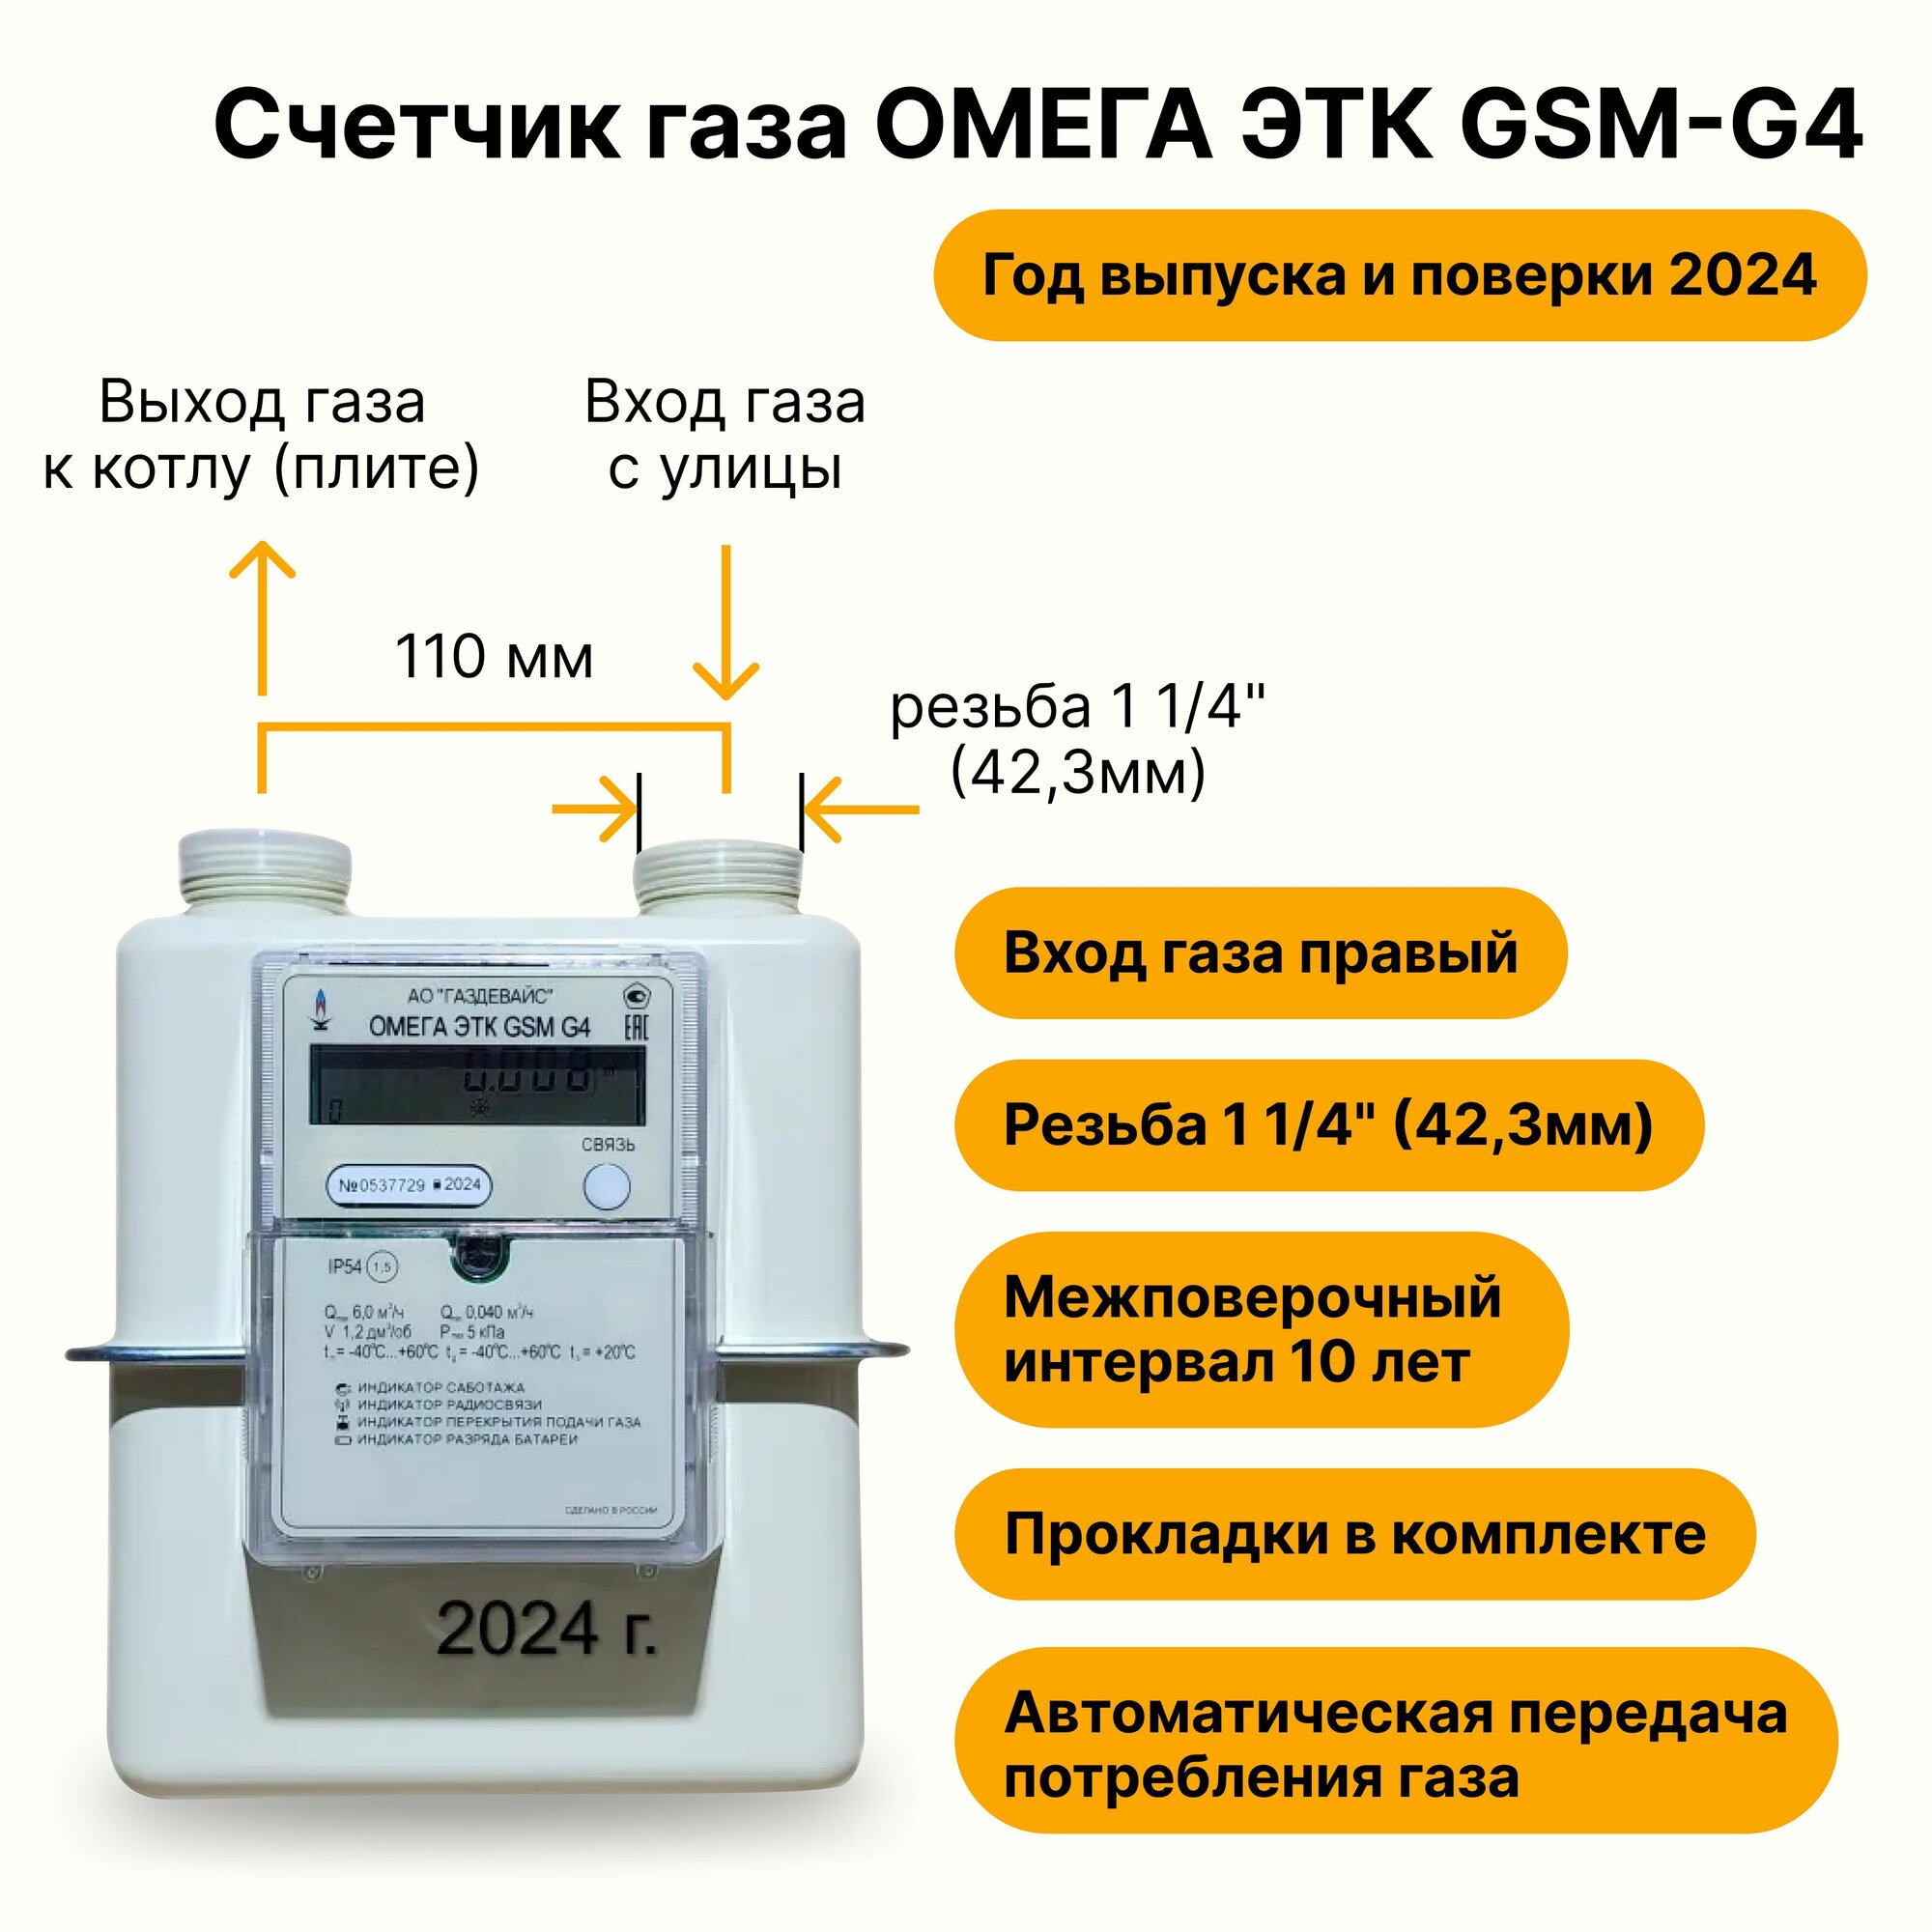 Омега ЭТК GSM G4 Газдевайс уличный (вход газа правый, 110мм, резьба 1 1/4", прокладки В комплекте) 2024 год выпуска с термокорректором